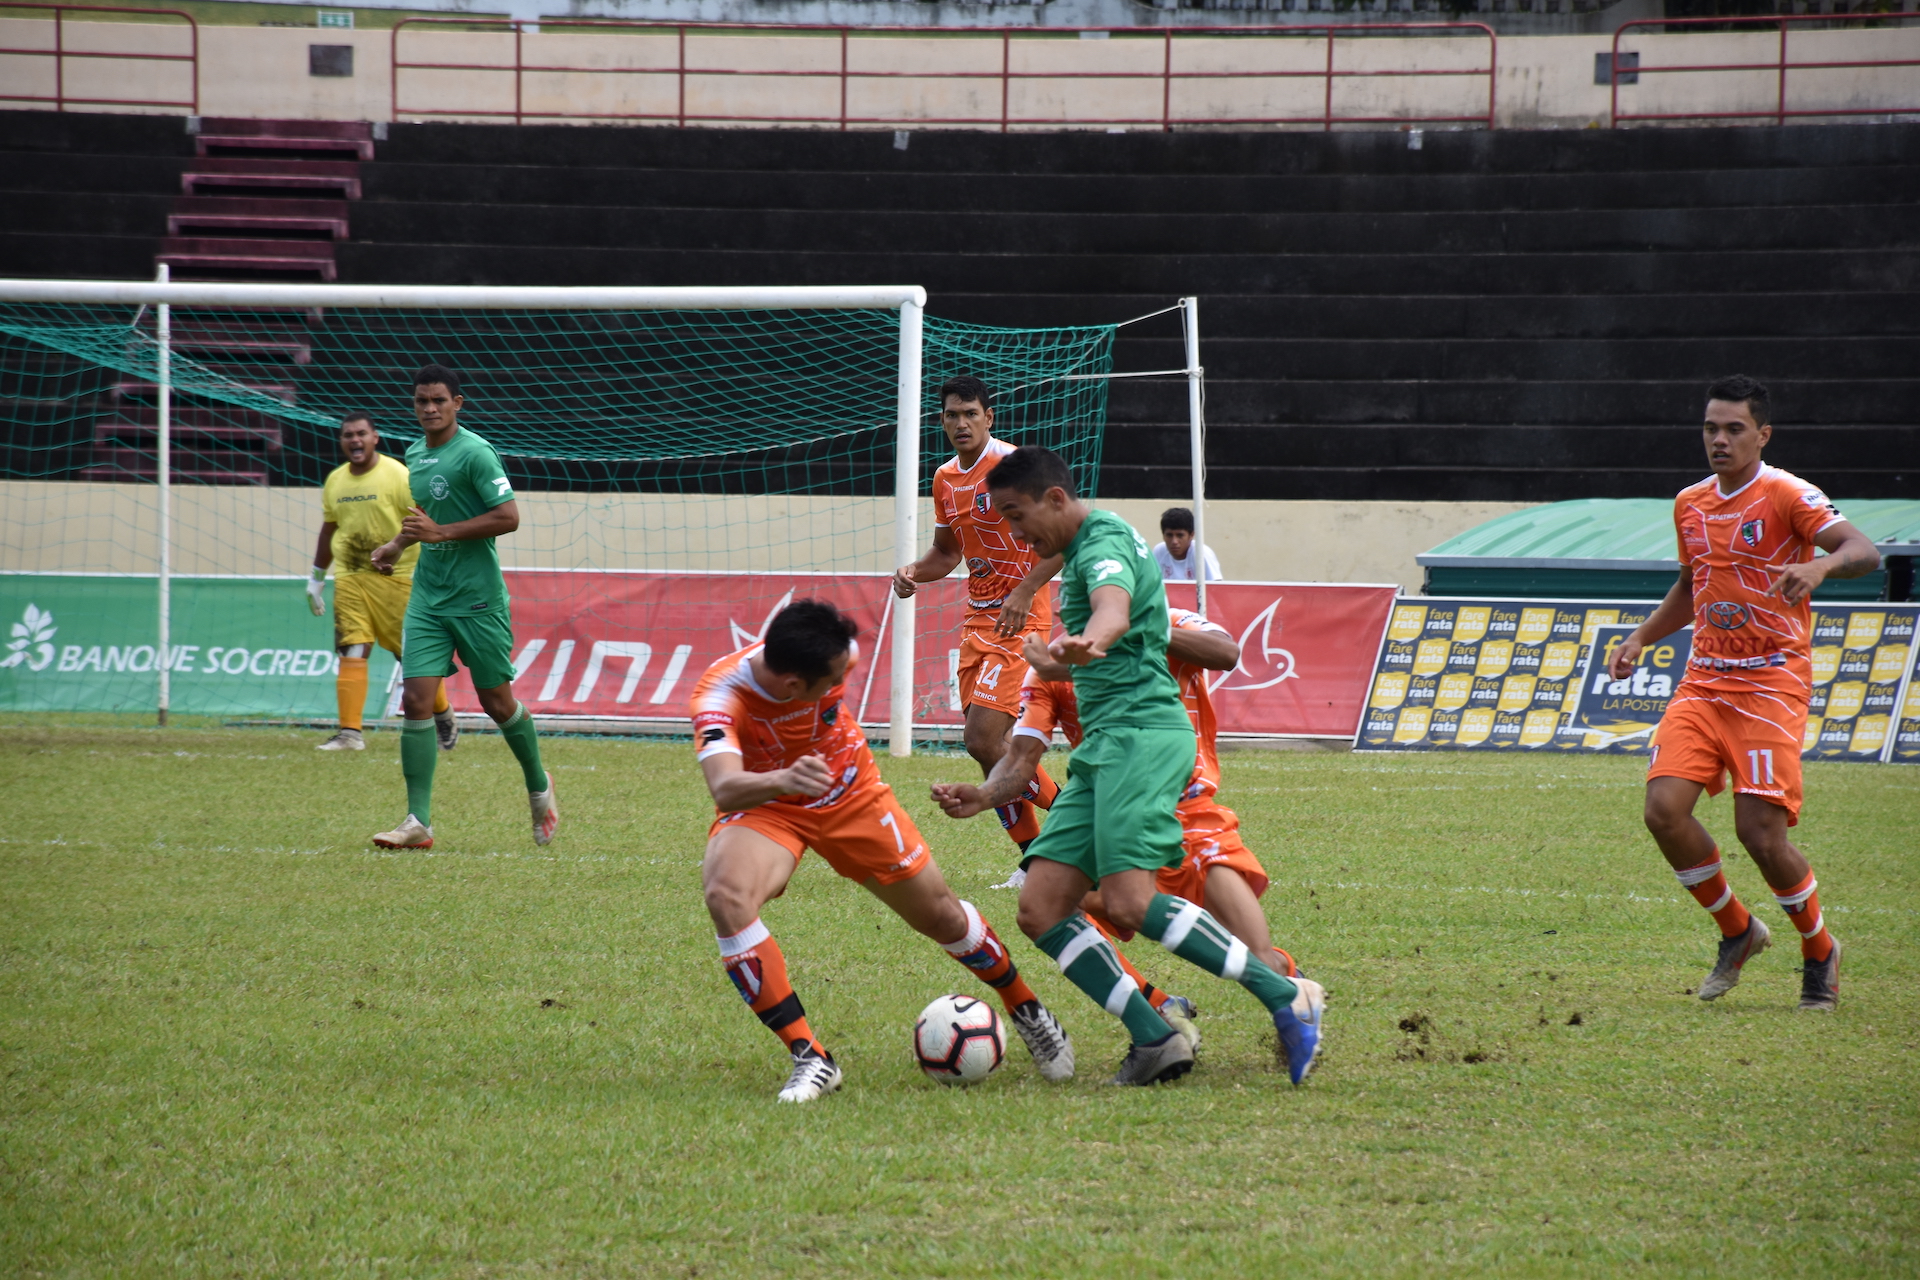 Trois jours après leur confrontation en quarts de finale de la Coupe de Polynésie, les Vert de Tiare Tahiti et les Orange de Pirae avaient de nouveau rendez-vous samedi.